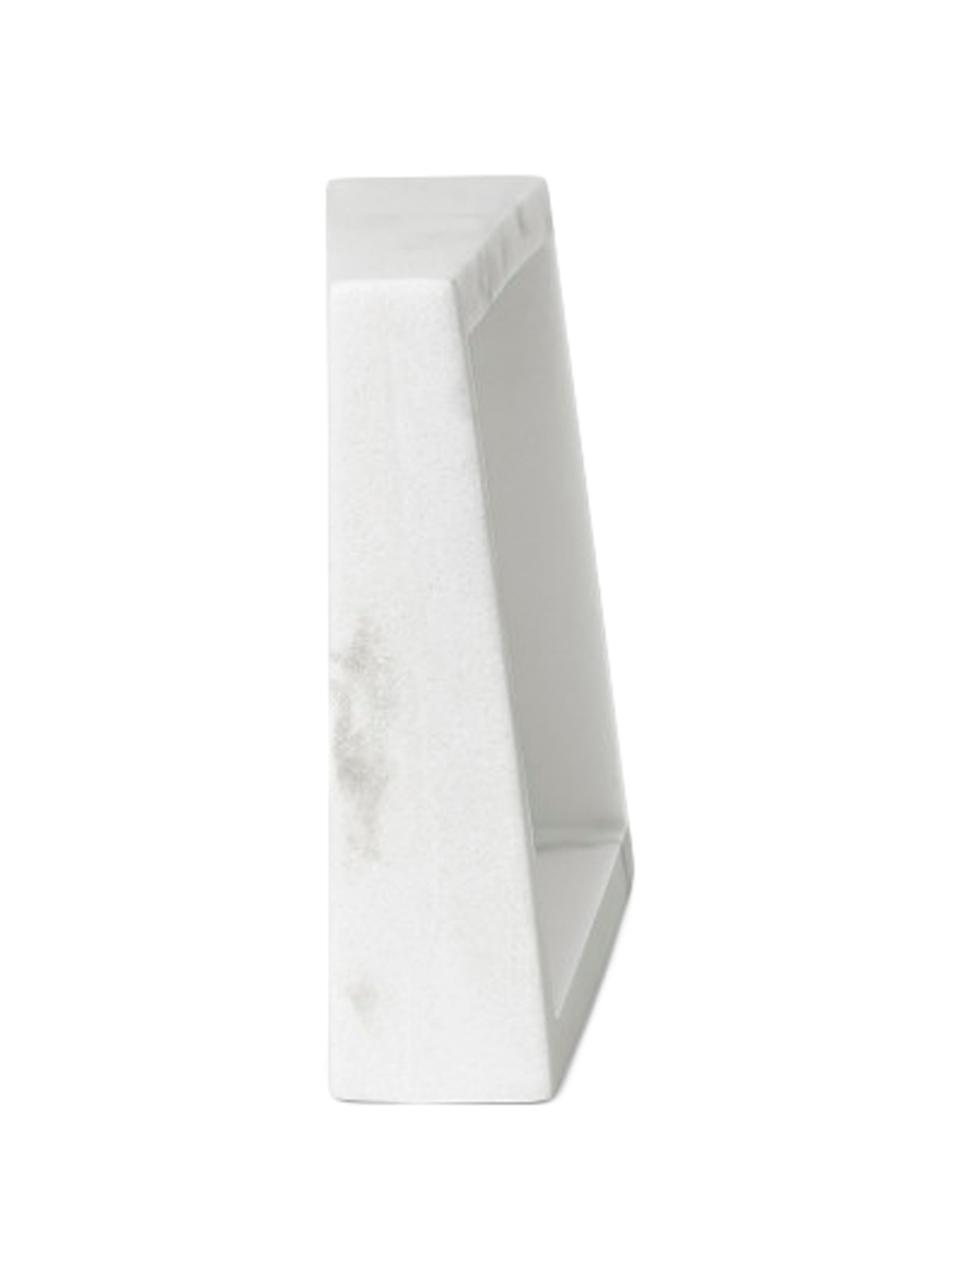 Portafoto da tavolo effetto marmo Edge, Poliresina con effetto marmo, Bianco, 10 x 15 cm